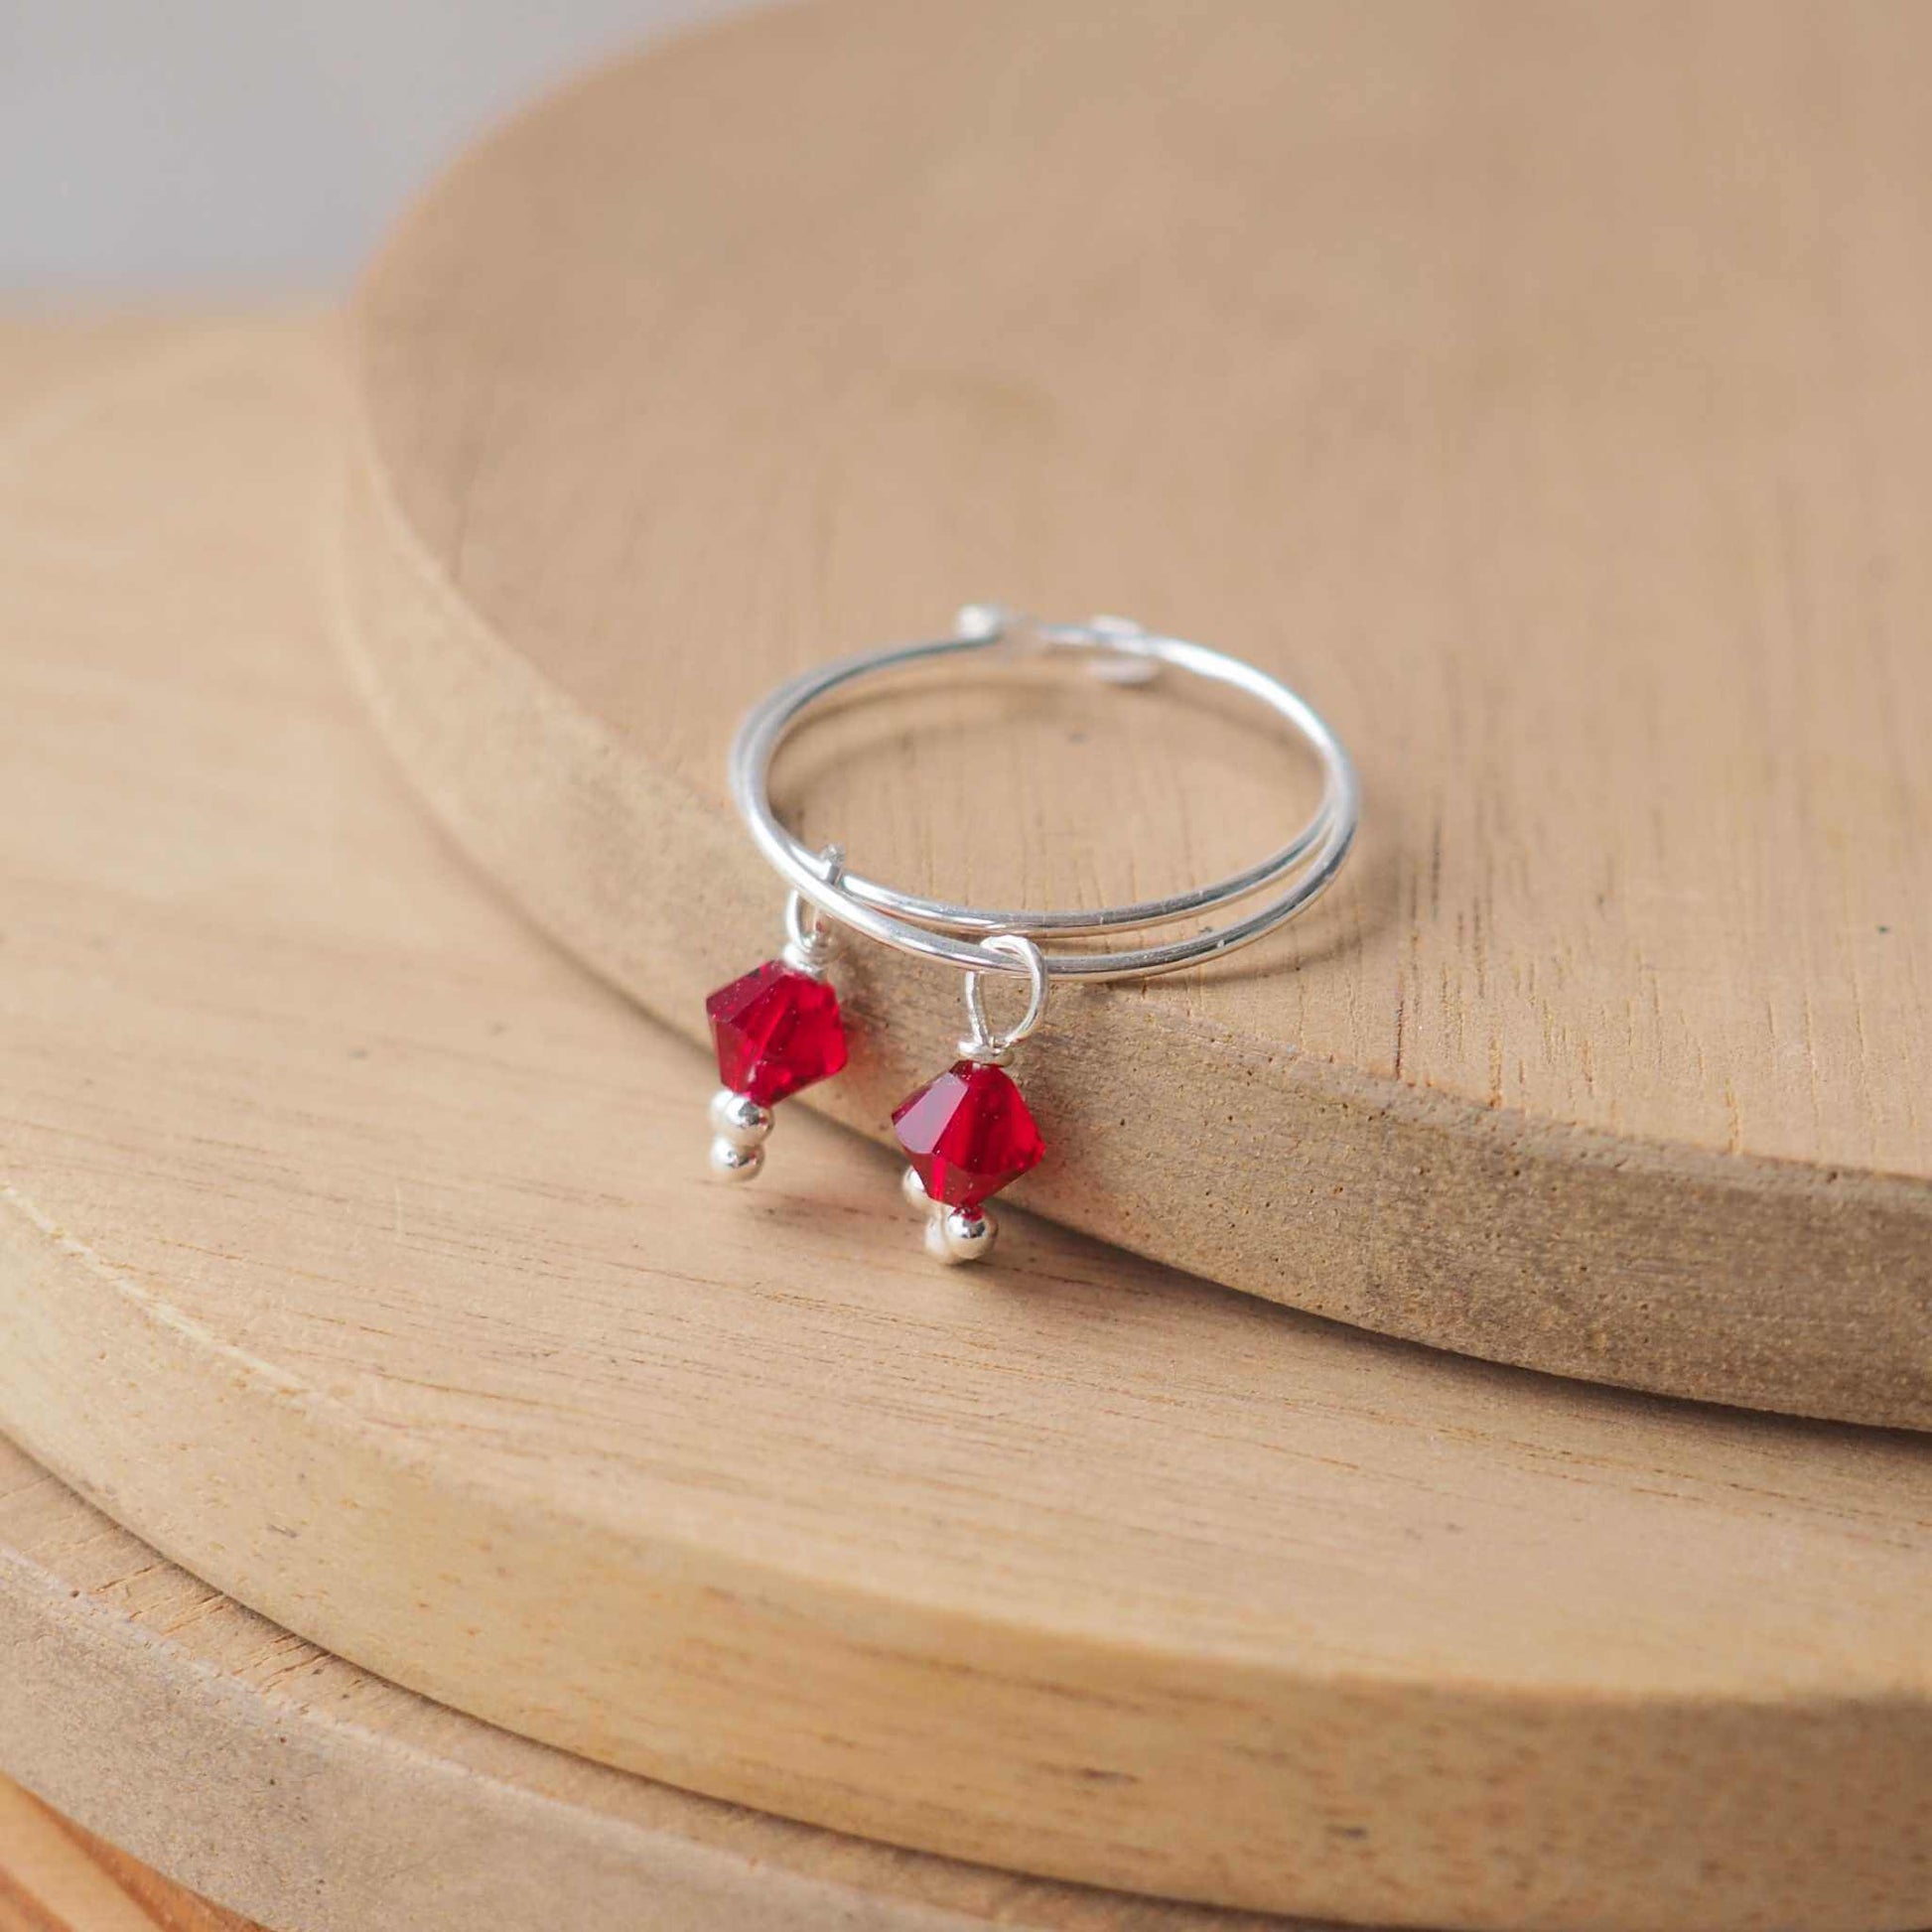 Boho style simple wire hoop earrings with a red crystal dropper. Simple birthstone hoop earrings with a red January birthstone crystal. handmade by an indie jeweller in Edinburgh UK